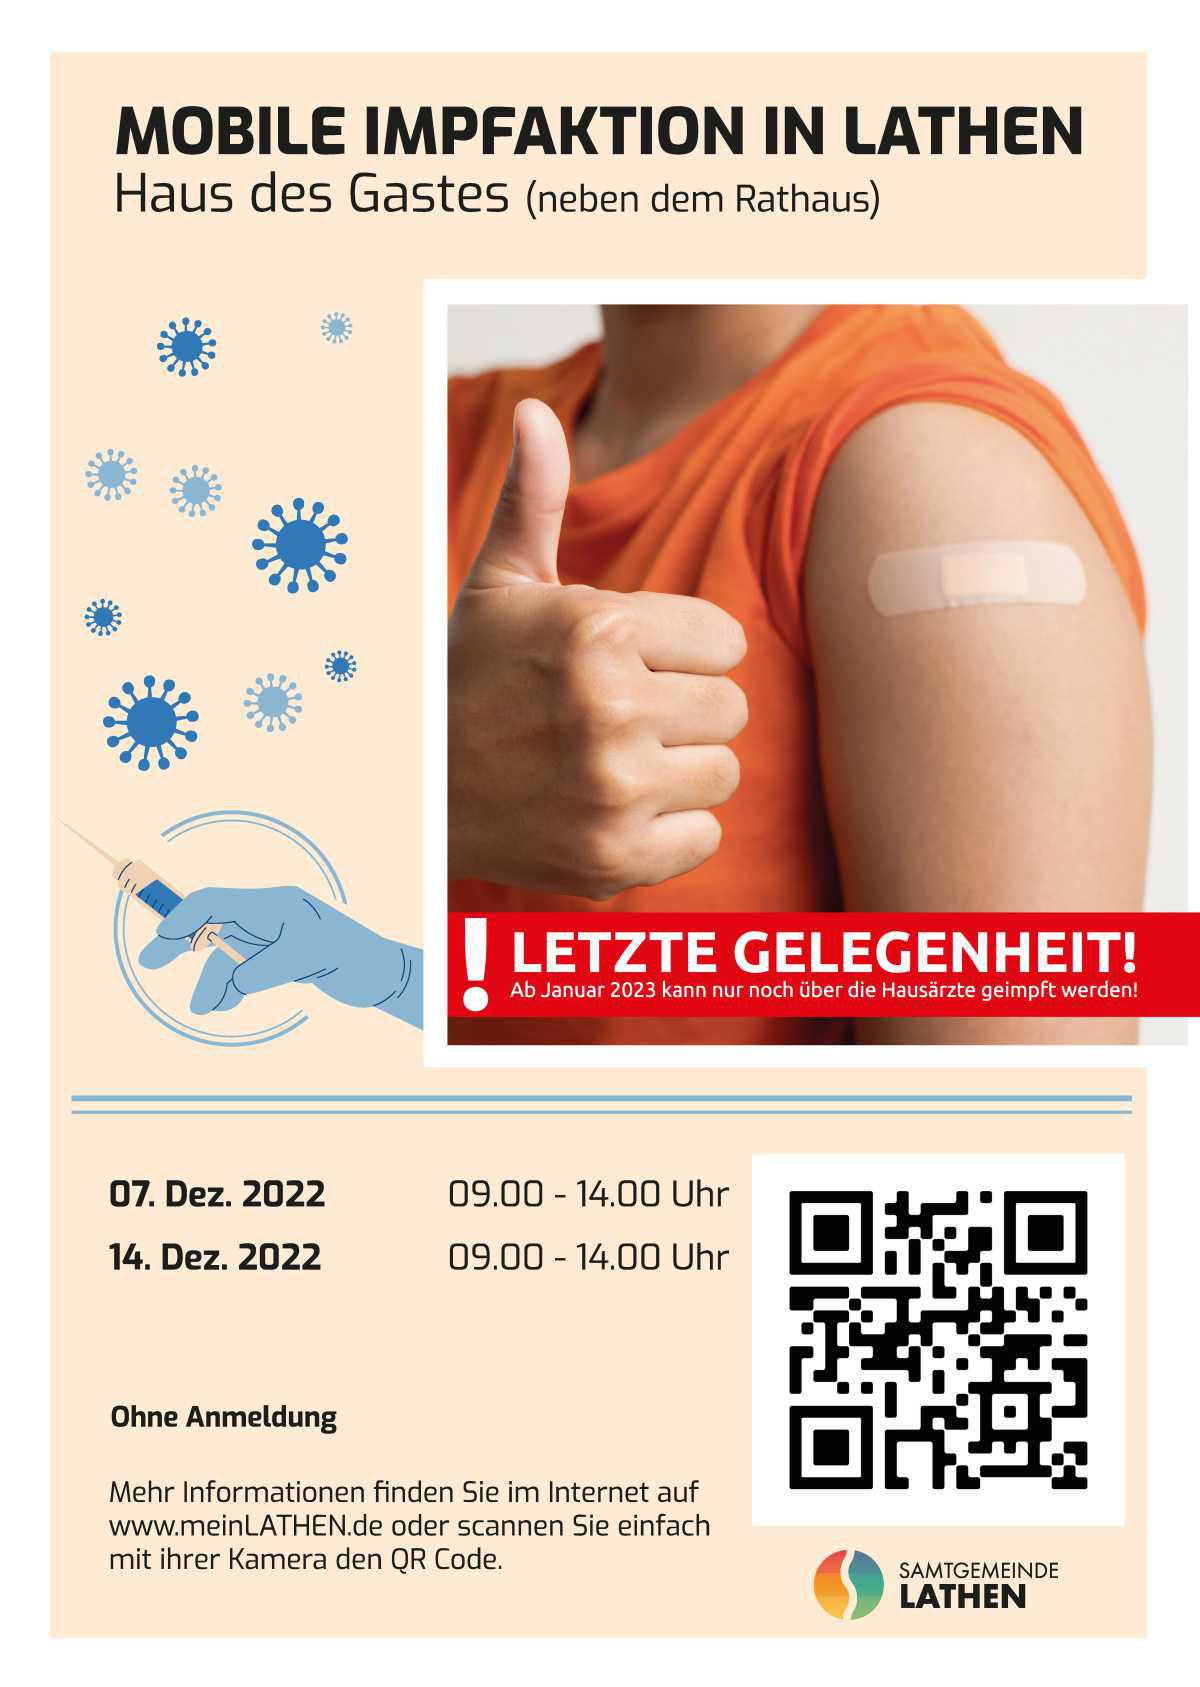 Mobile Impfaktionen in Lathen - letzte Gelegenheit im Dezember!